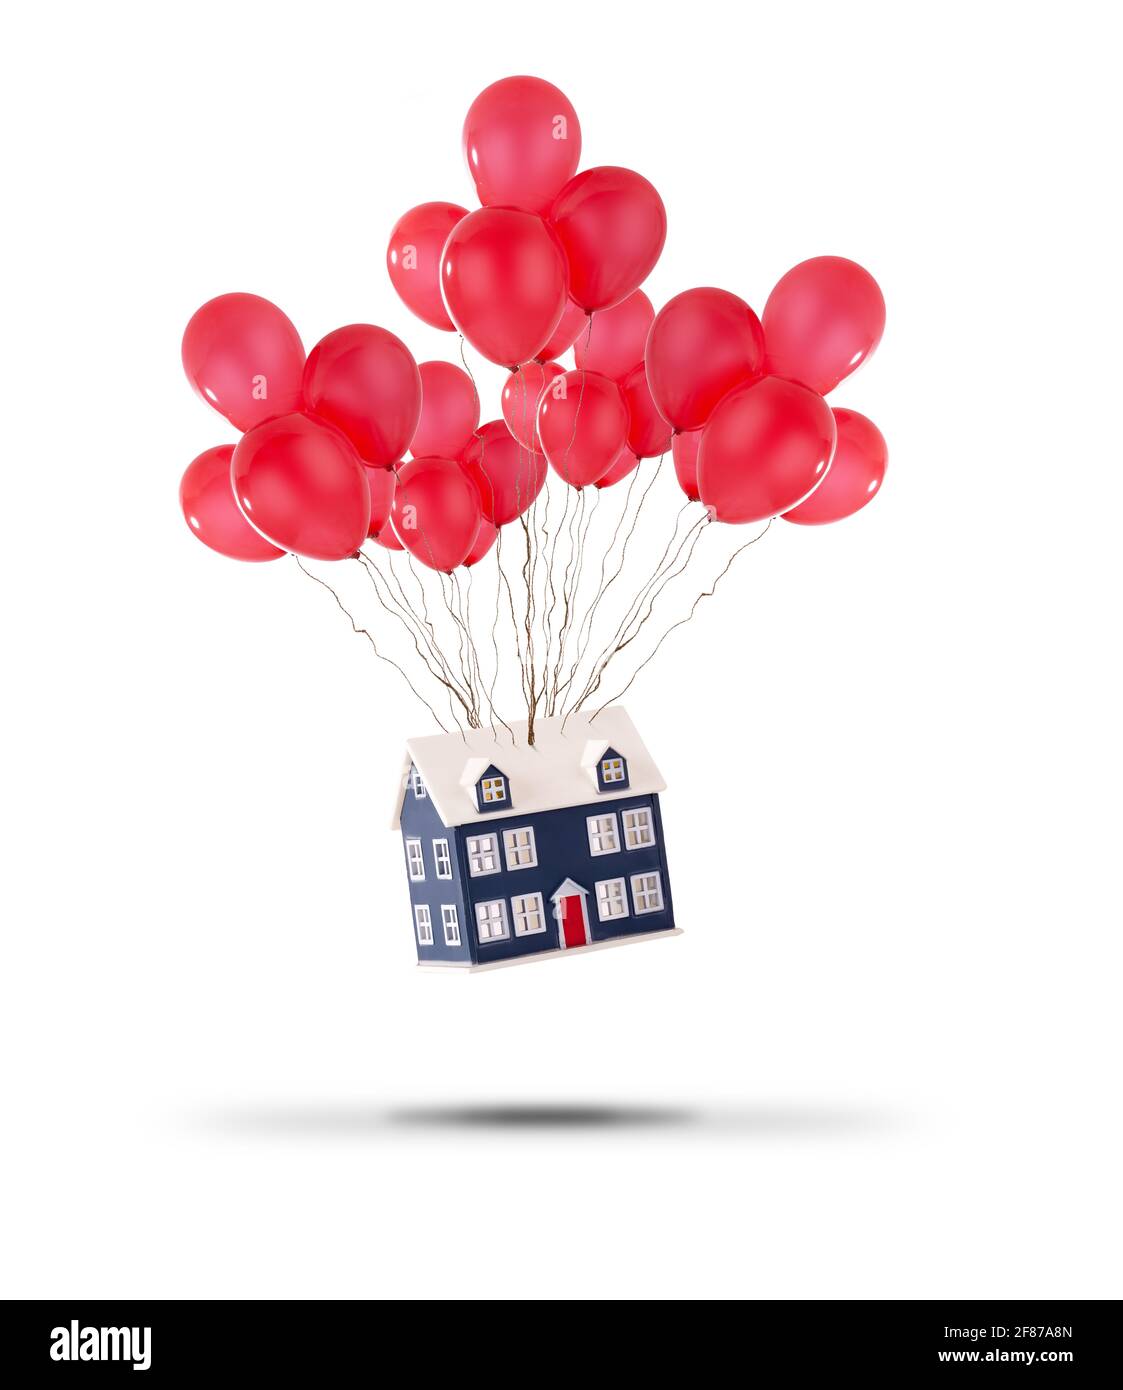 Das Spielzeughaus wurde mit roten Ballons auf weißem Hintergrund hochgehoben. Wohnungspreise steigen und Umzug nach Hause Konzept Stockfoto